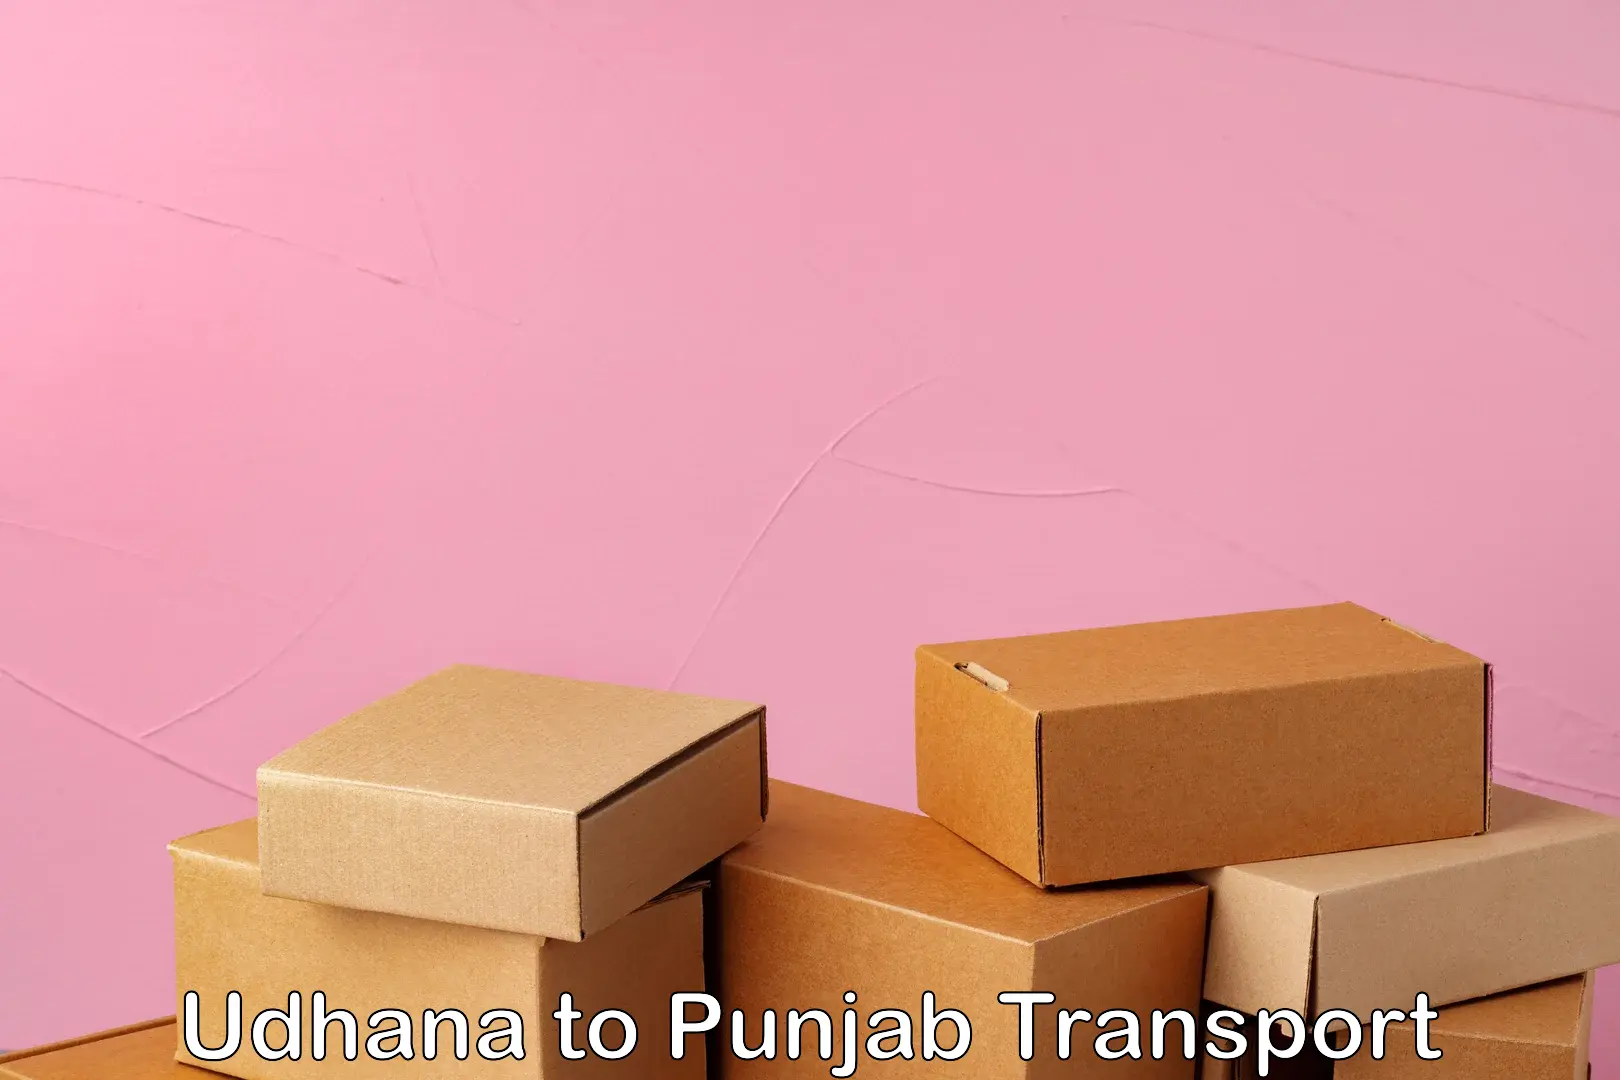 Transport in sharing Udhana to Punjab